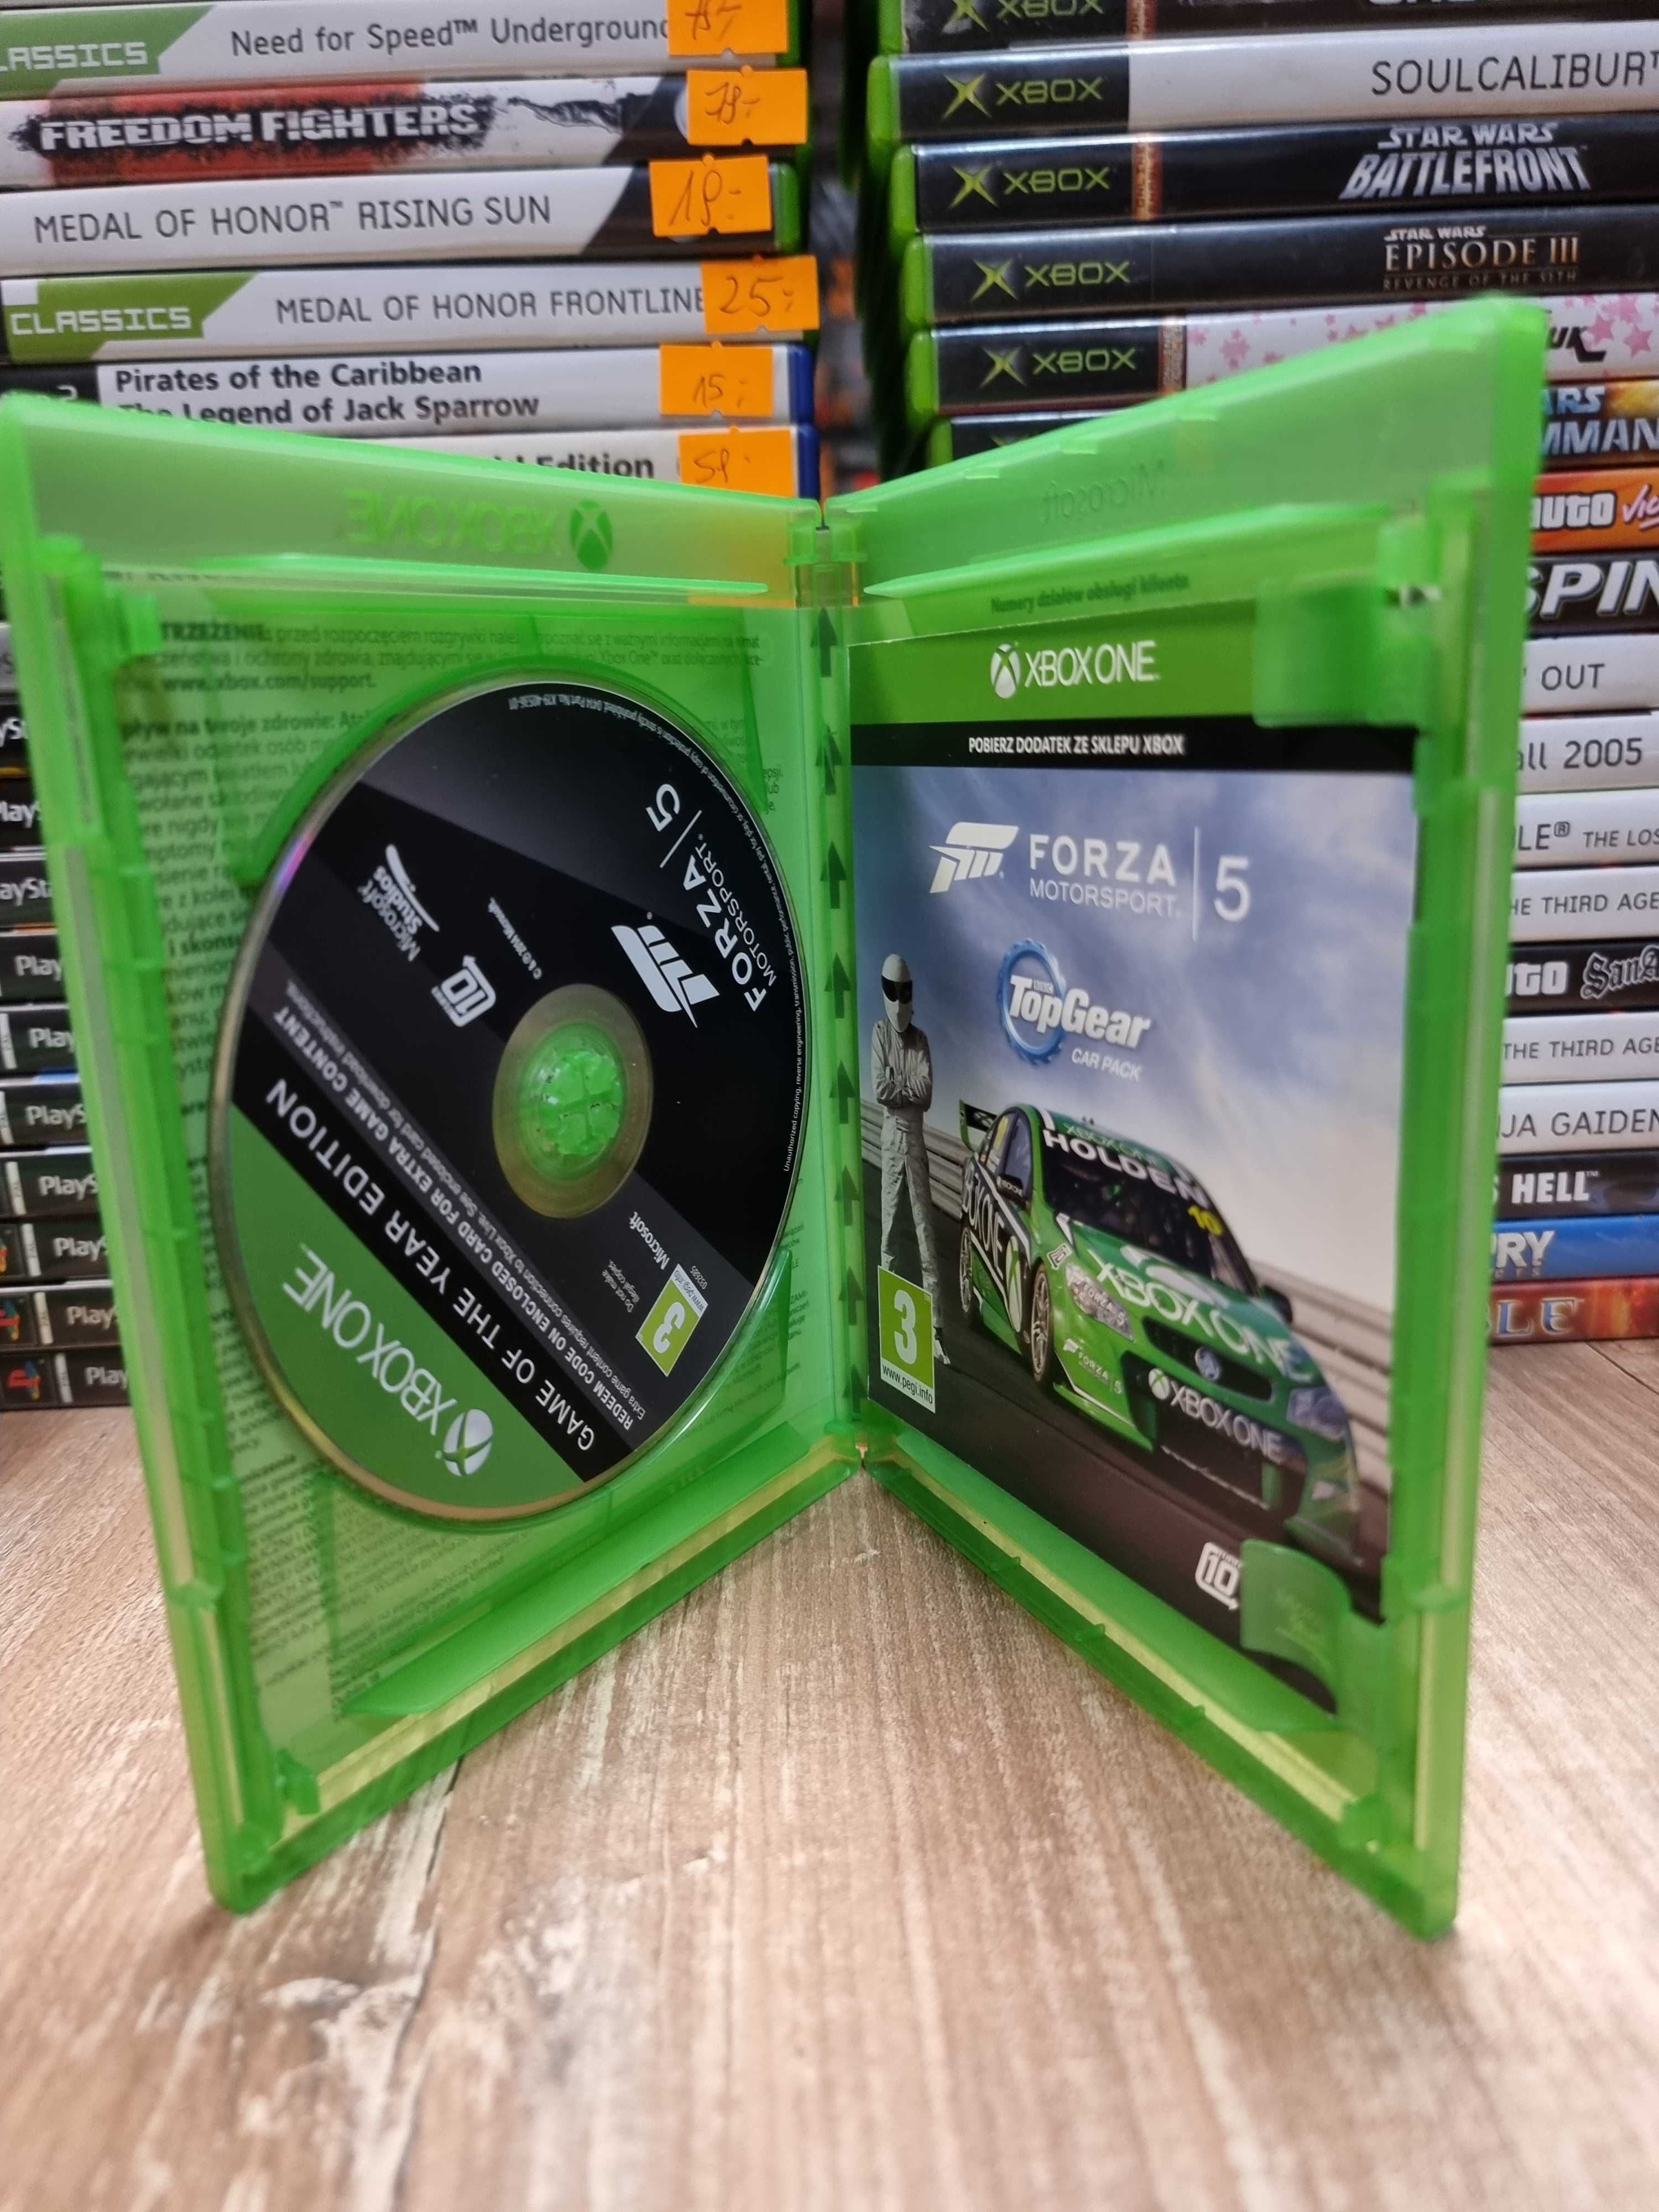 Forza Motorsport 5 XONE Sklep Wysyłka Wymiana